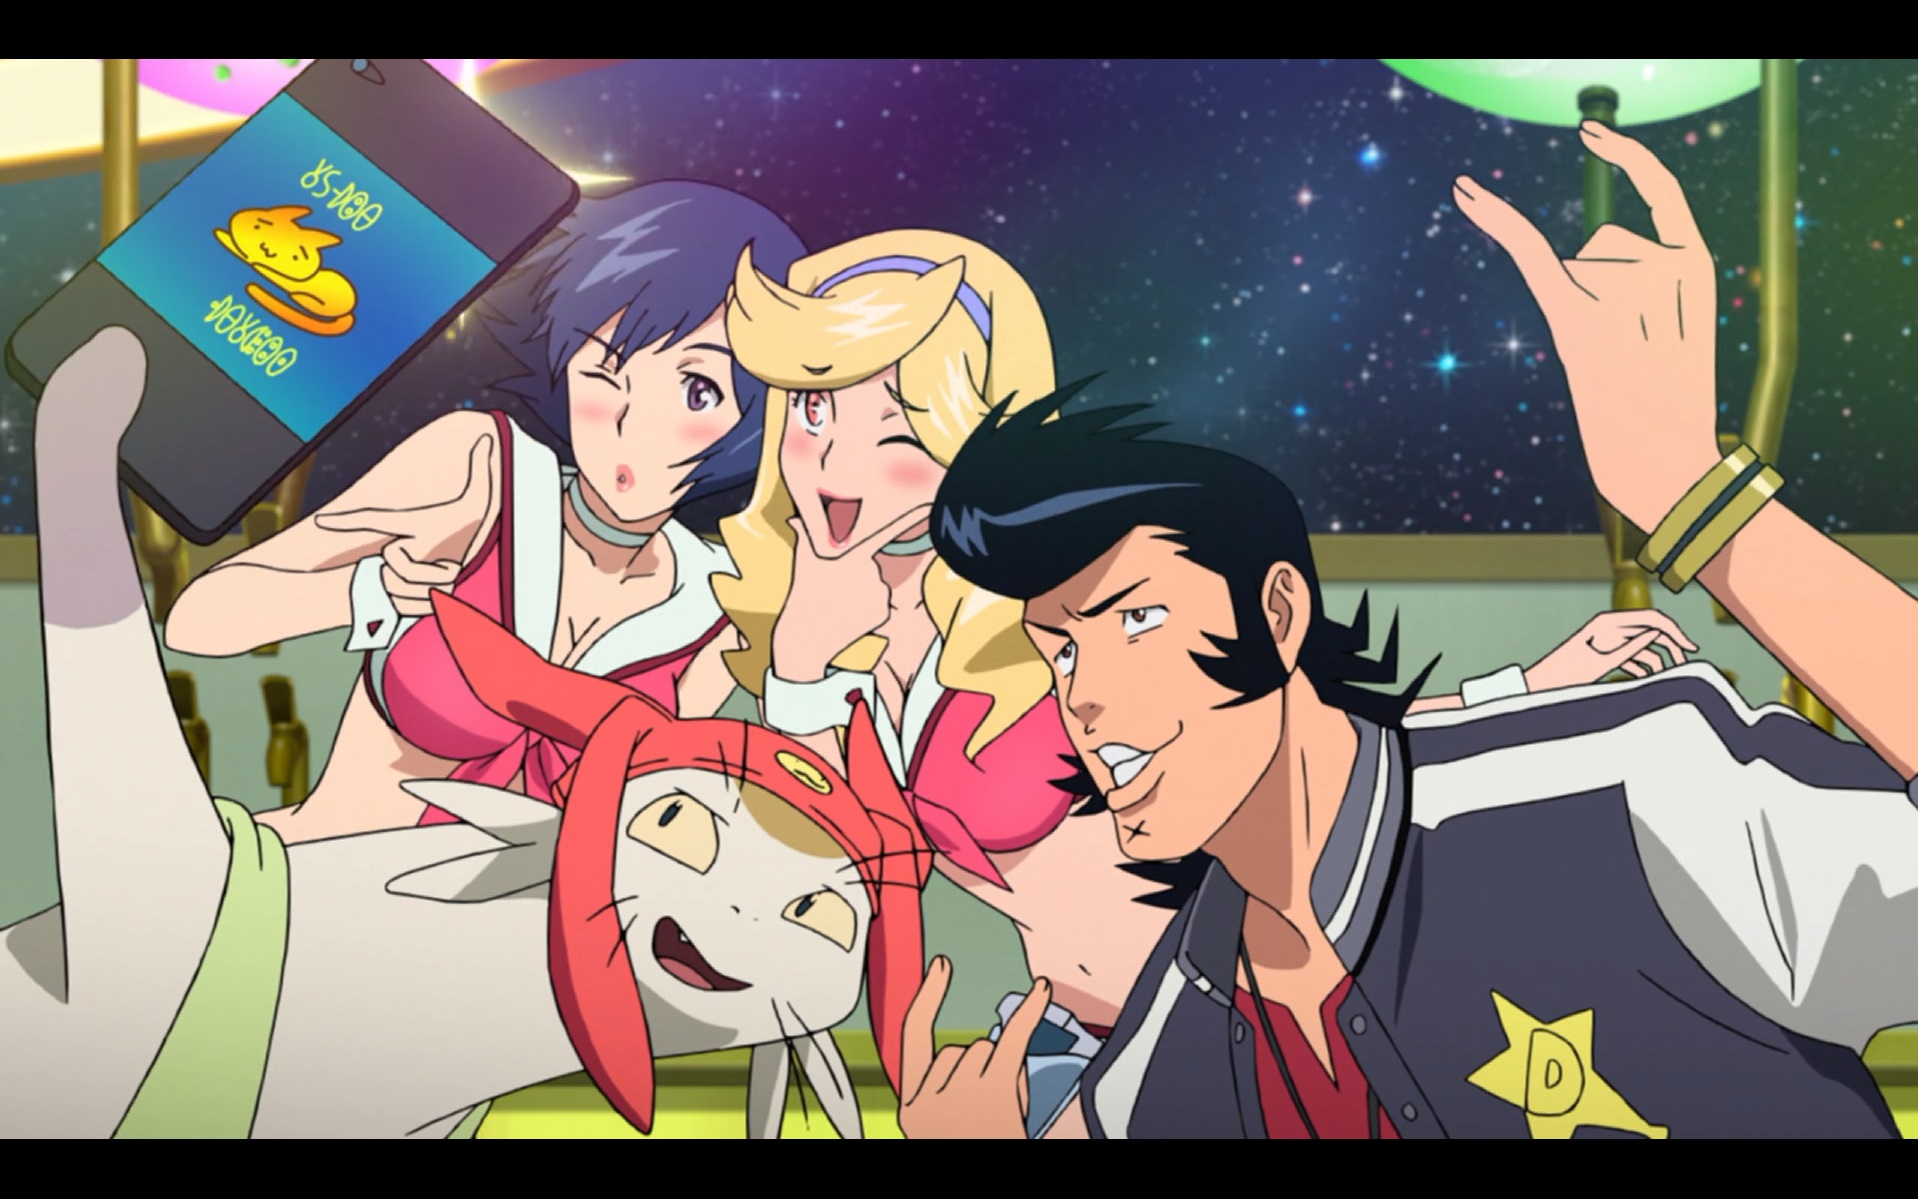 Meow, Dandy und die Kellnerinnen von Boobies machen in einer Szene aus dem TV-Anime Space Dandy ein Selfie mit Meows Handy.